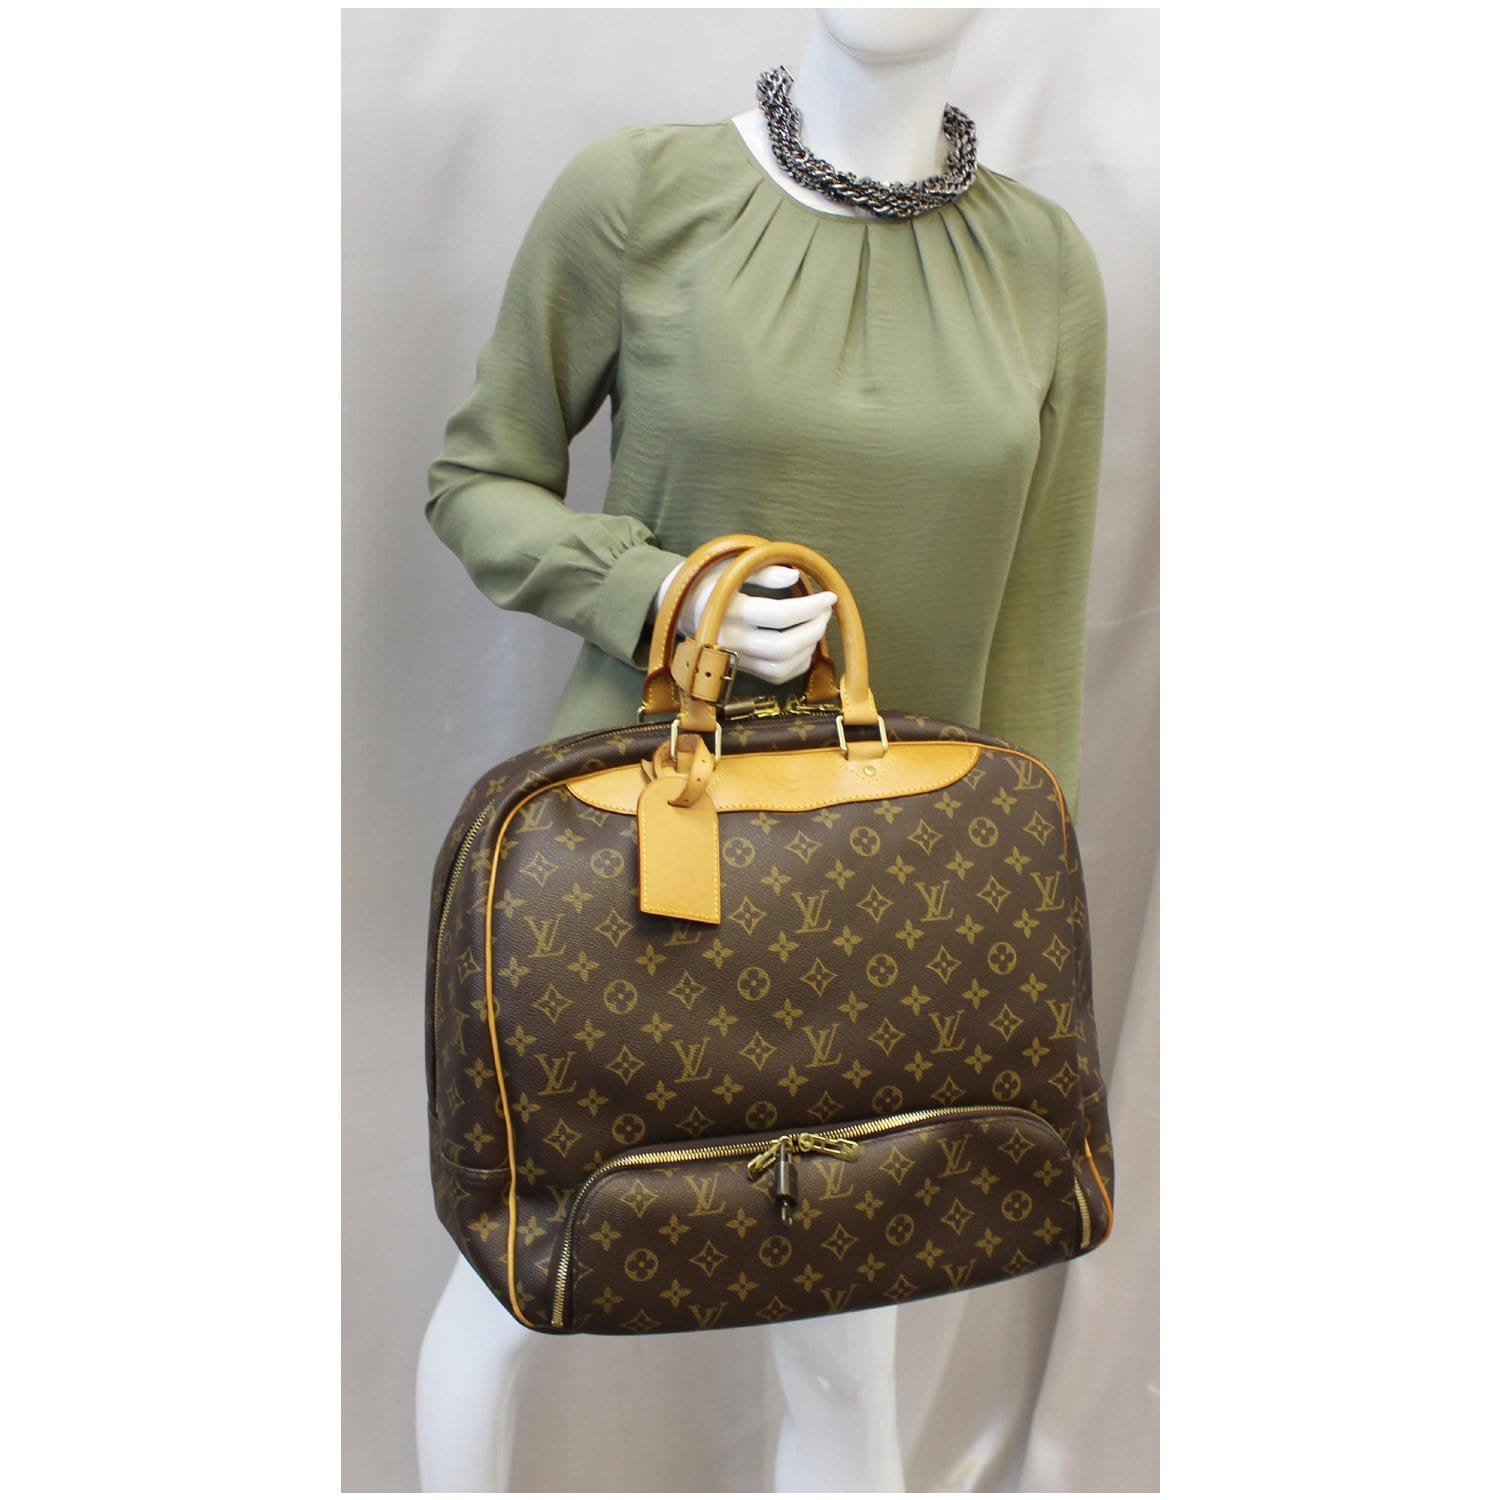 Louis Vuitton Evasion Travel Bag